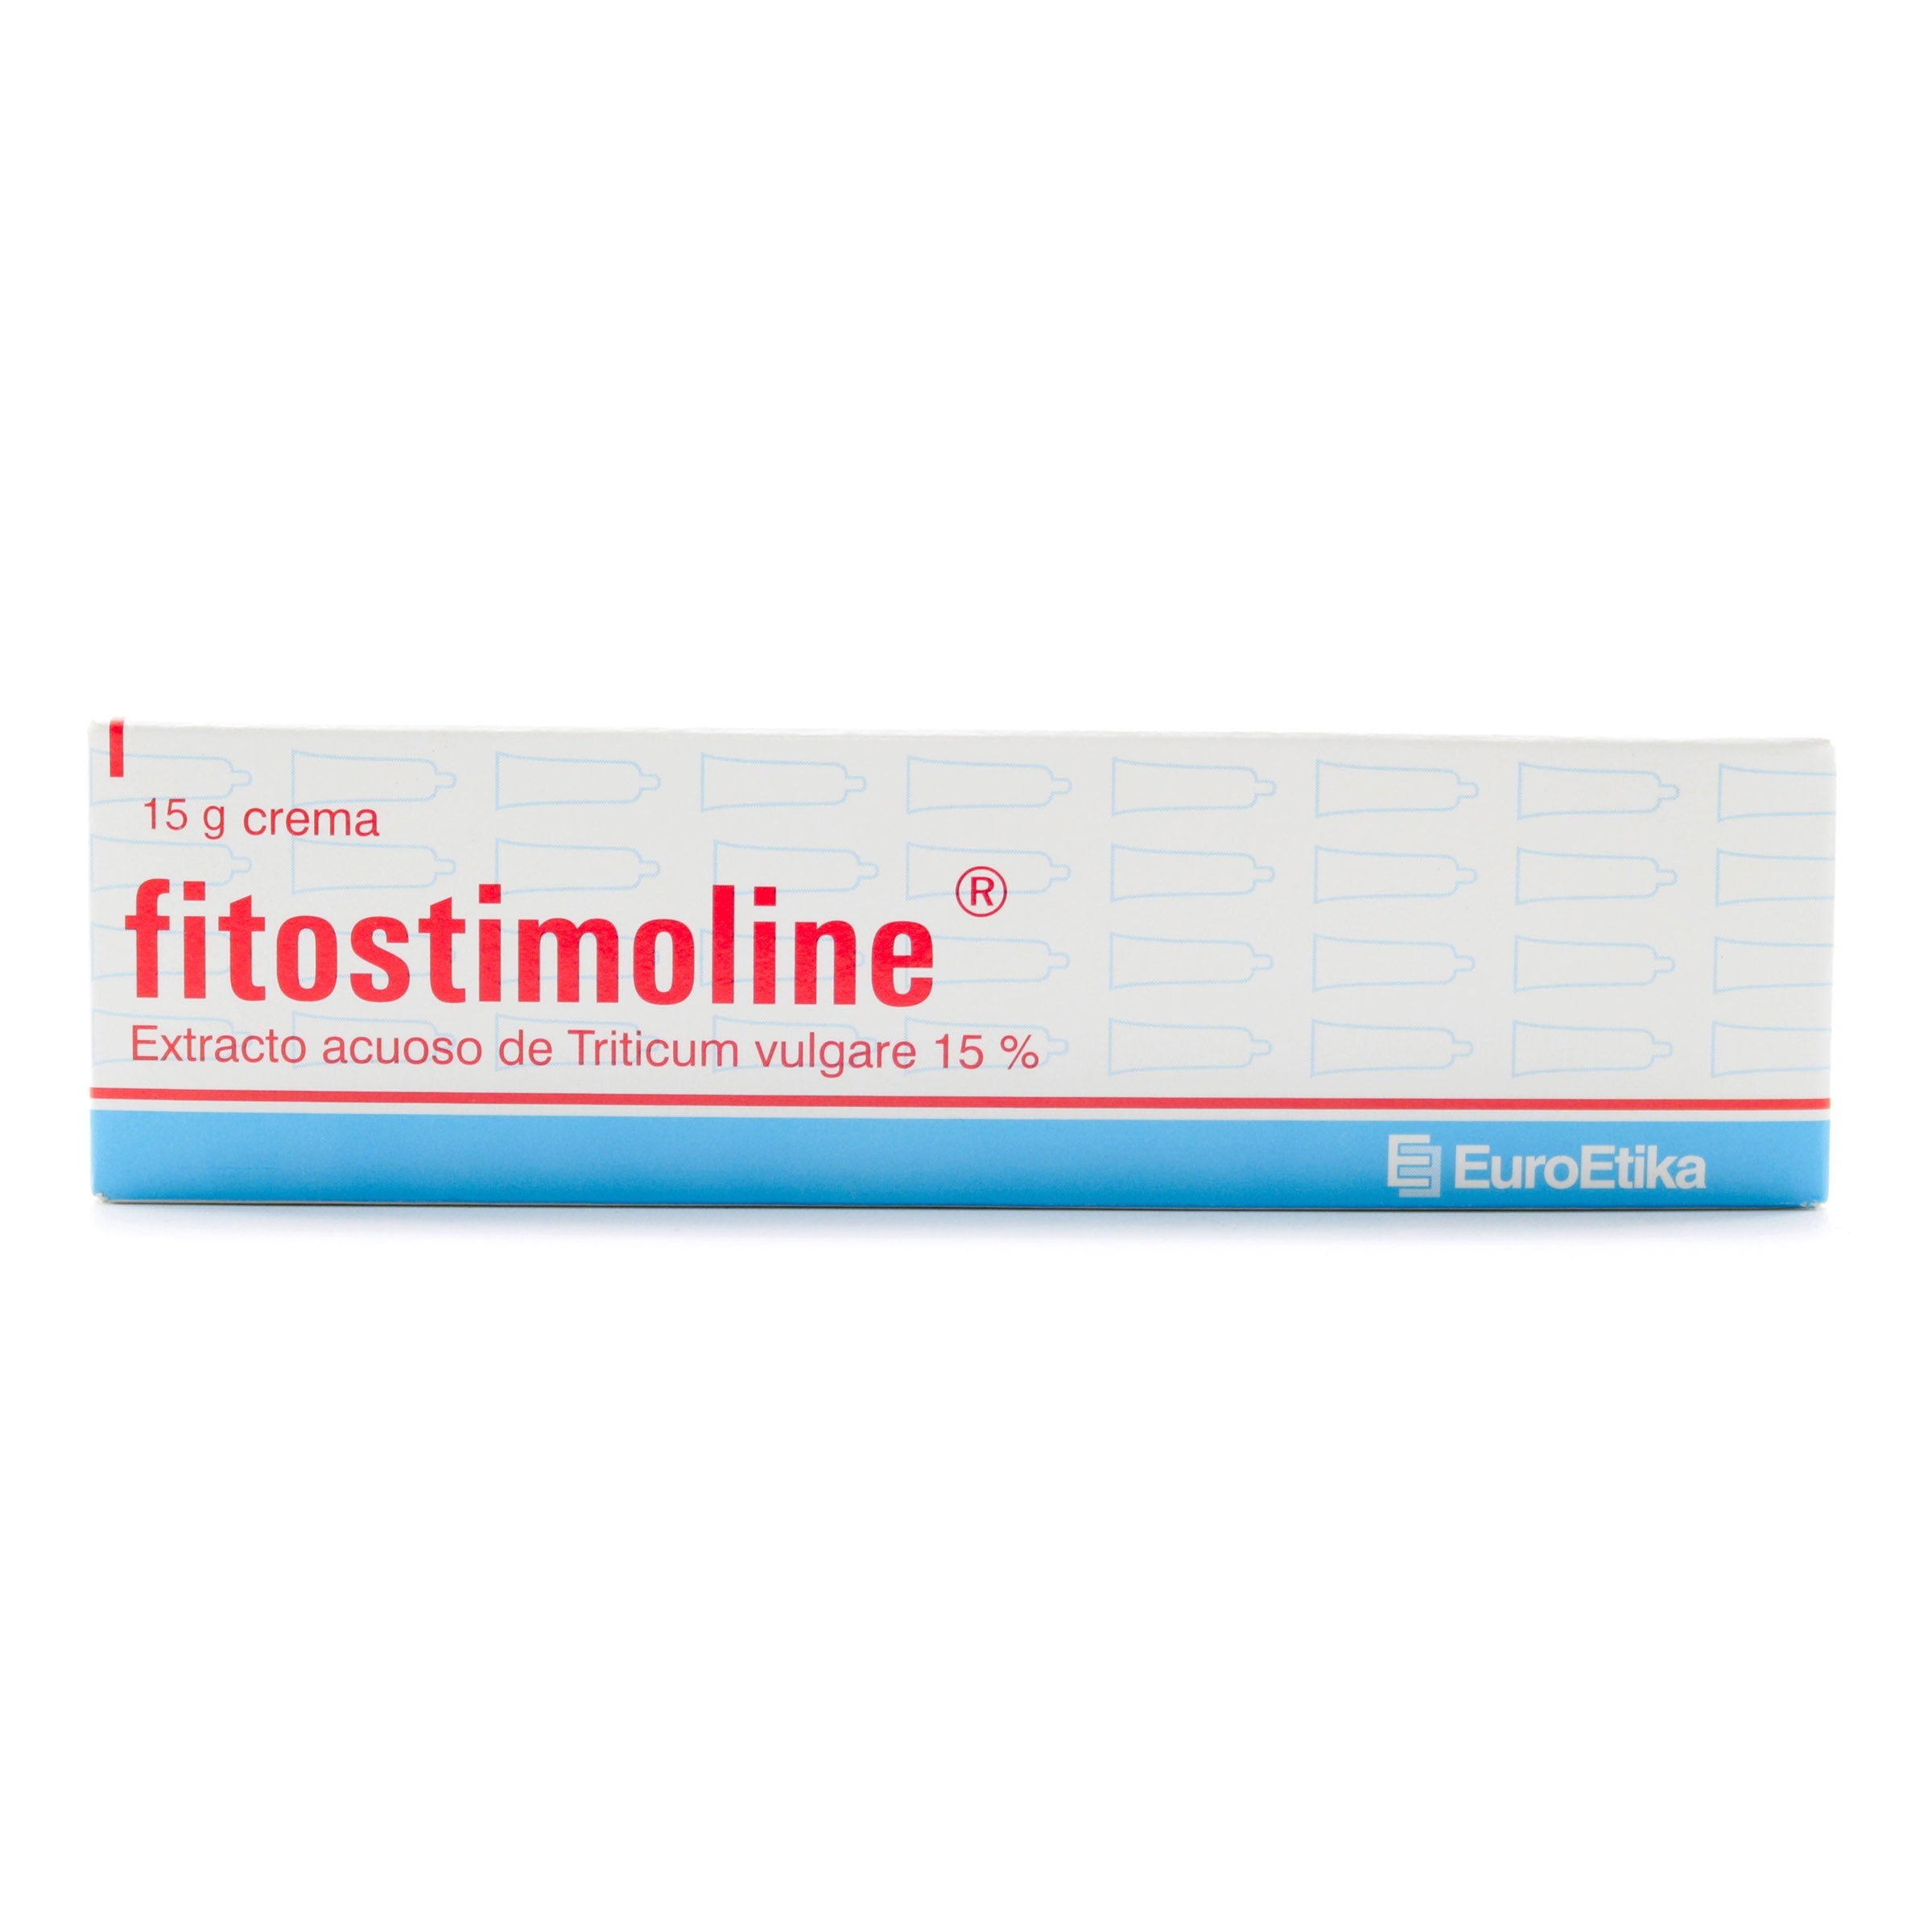 FITOSTIMOLINE CREMA 15 GR